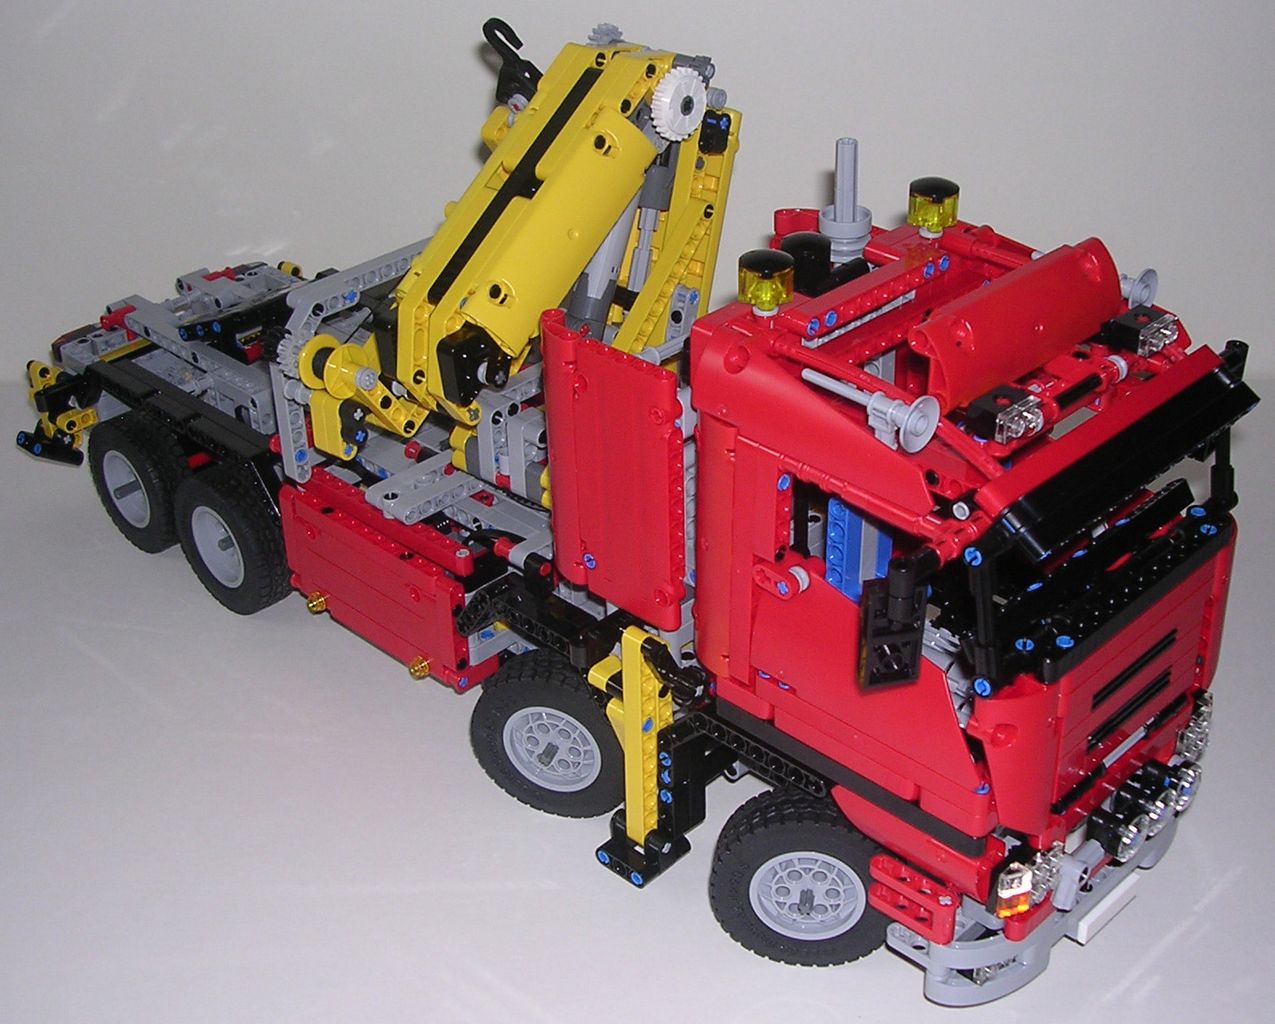 LEGO Technic 8258 pas cher, Le camion-grue